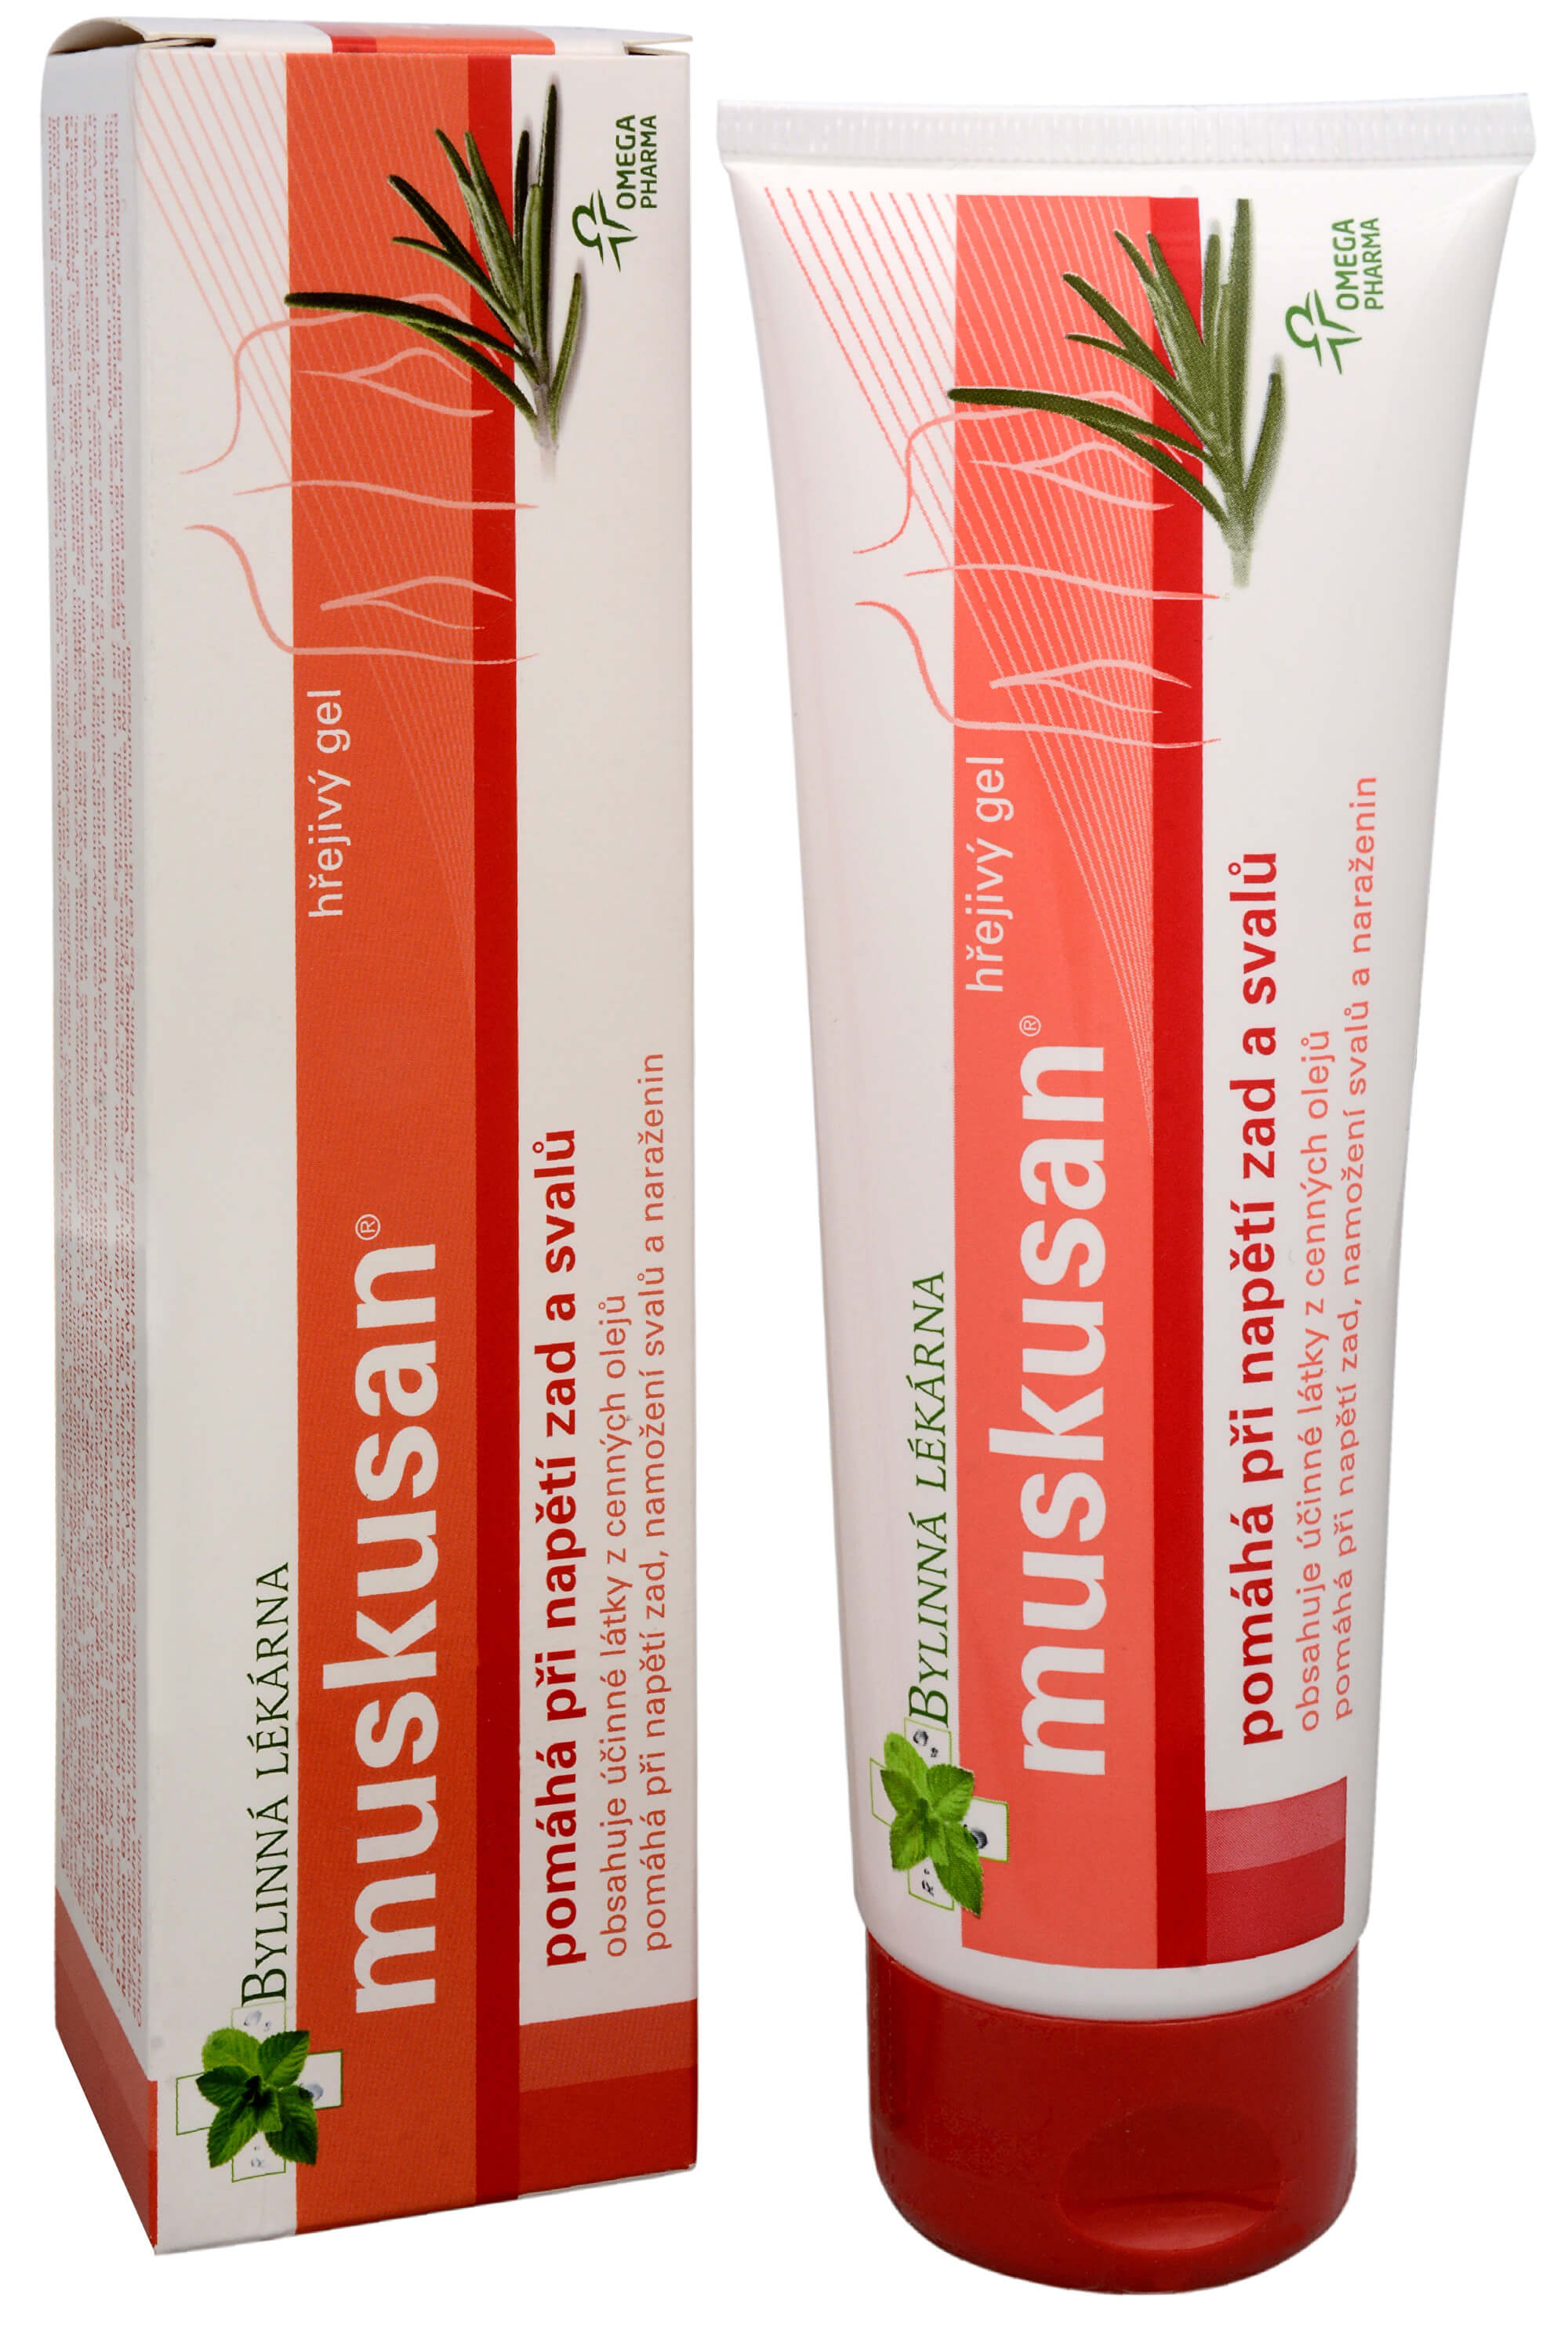 Omega Pharma Muskusan masážní hřejivý gel 120 g